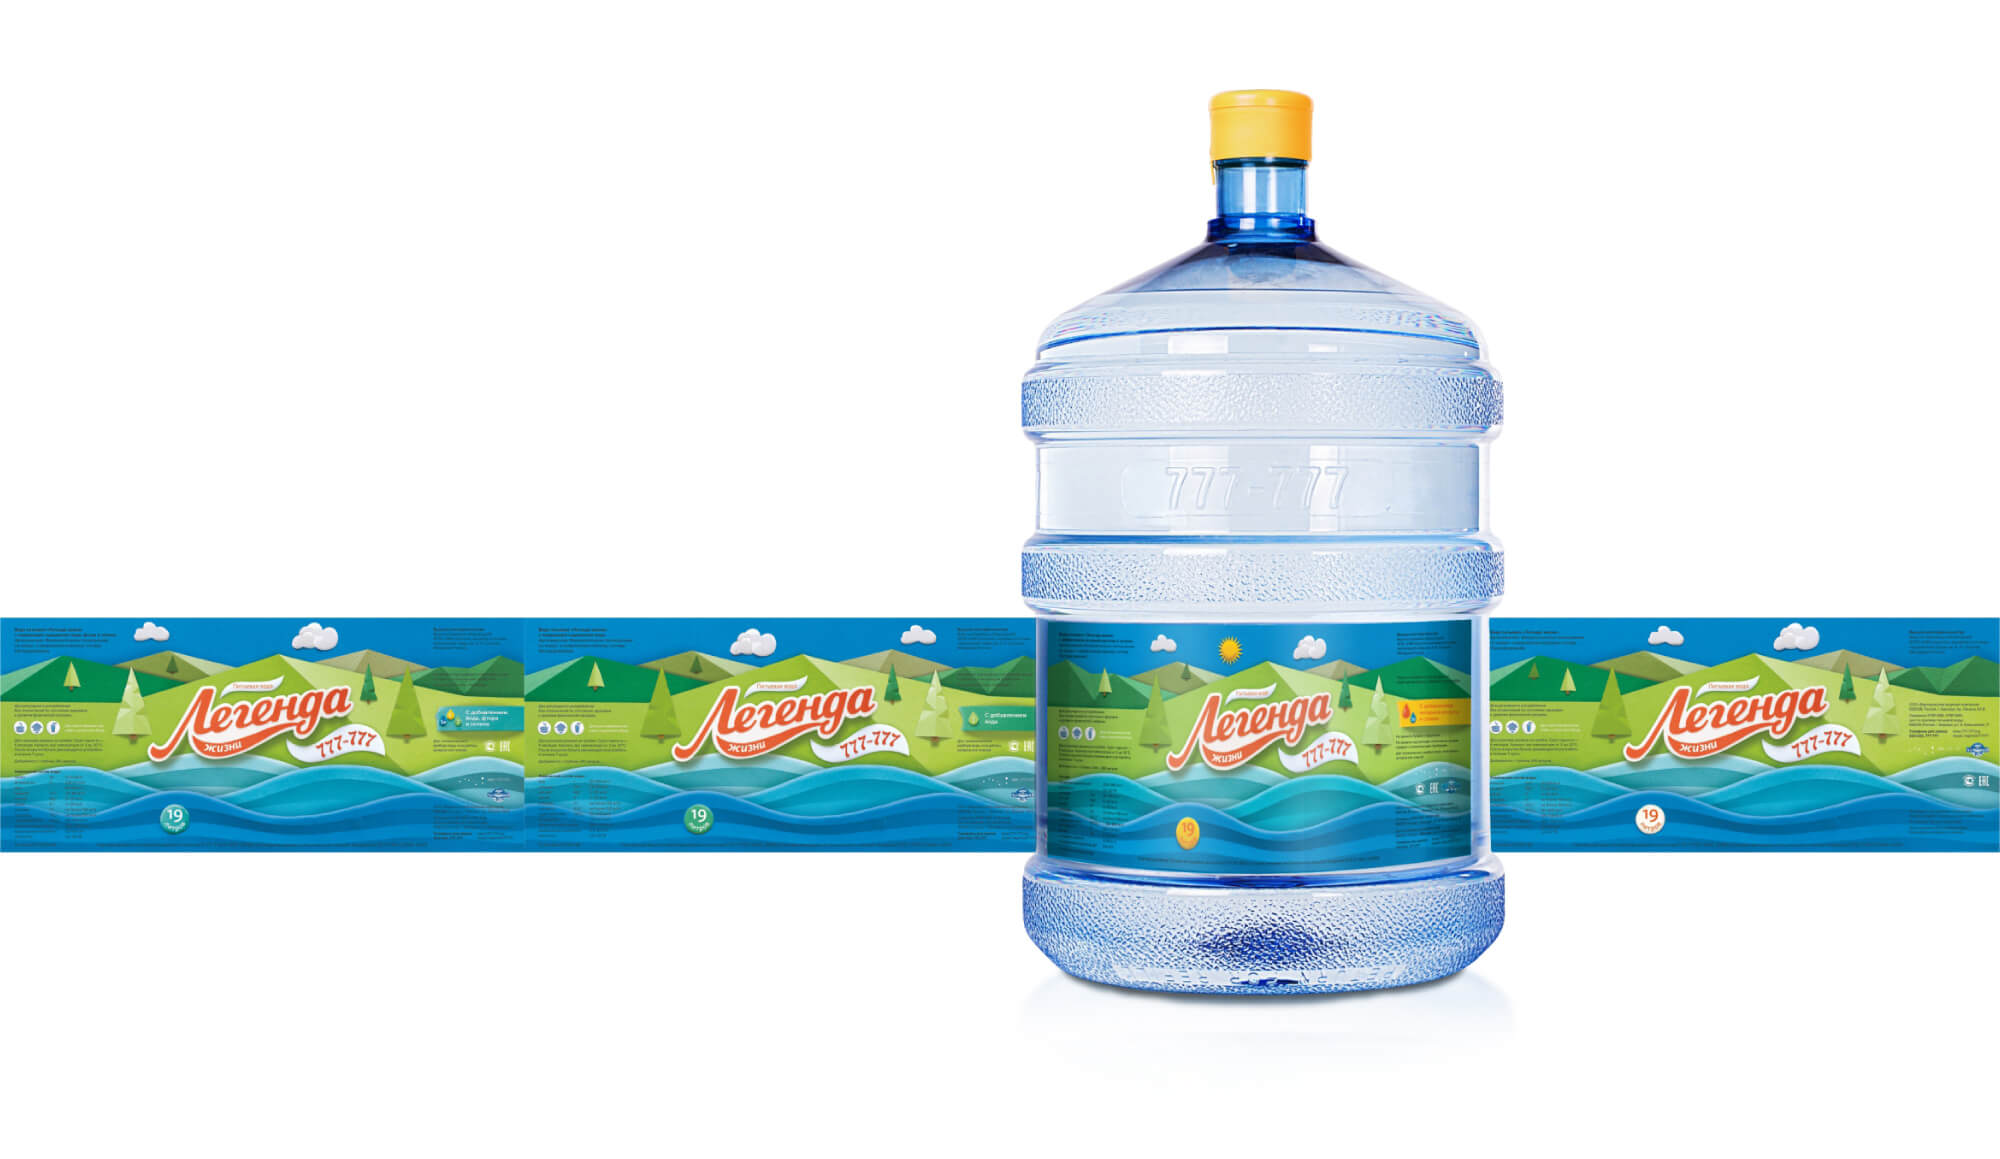 Заказ воды барнаул. Легенда вода Барнаул. Легенда жизни вода. Водяная компания Барнаул.